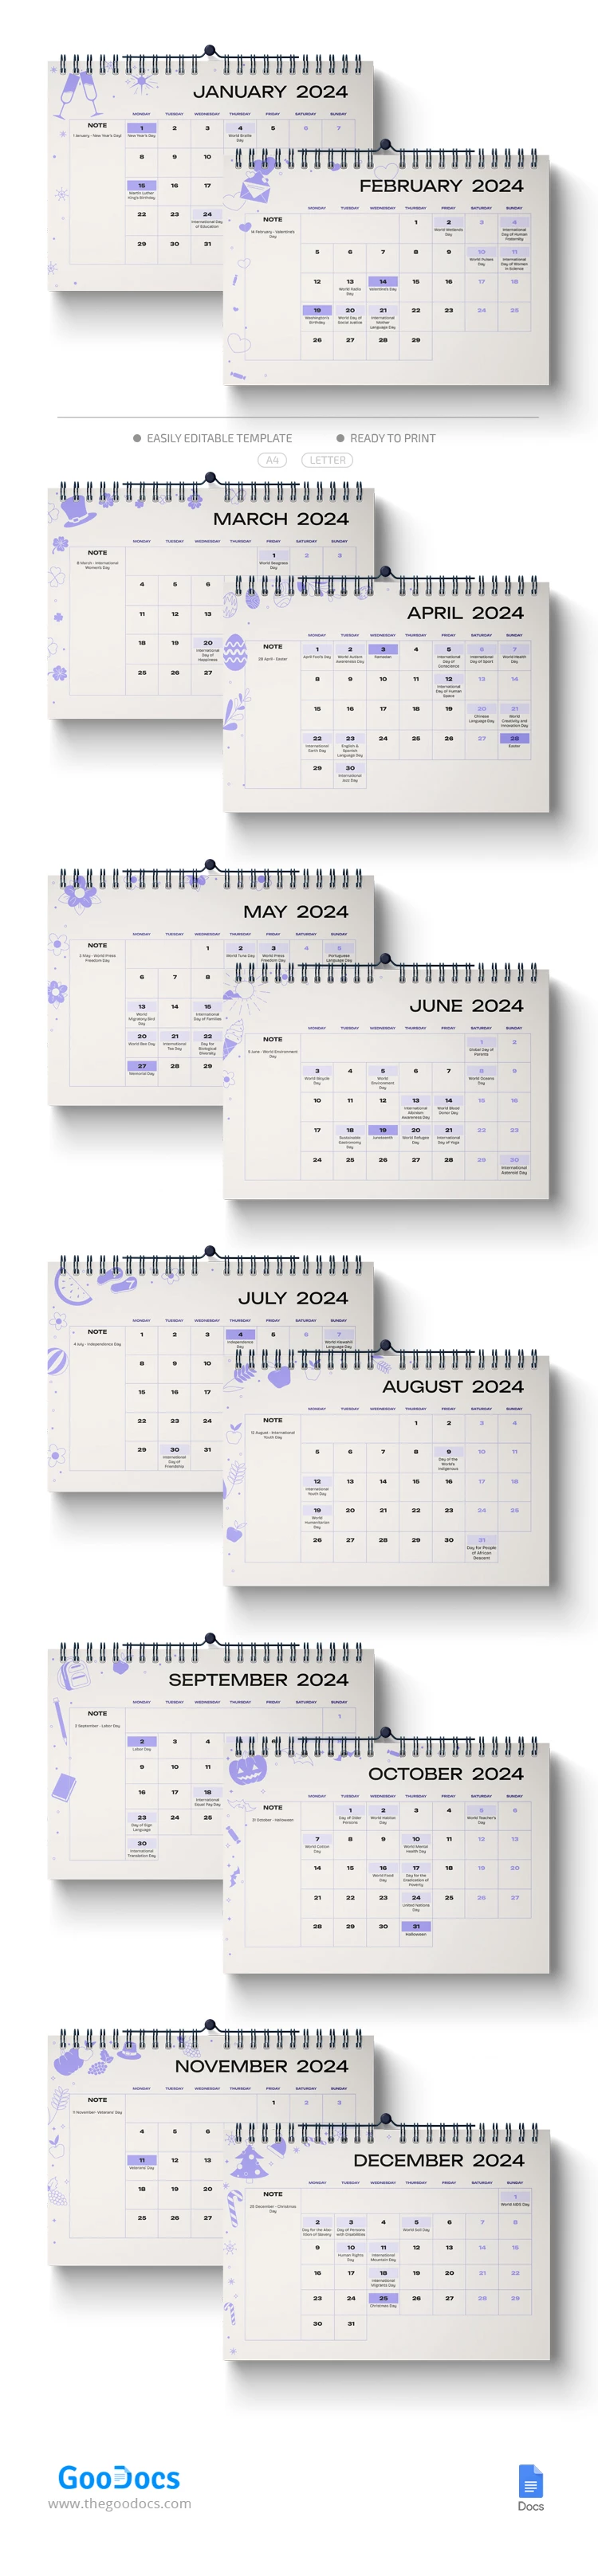 Calendário de Feriados de 2024 - free Google Docs Template - 10068550